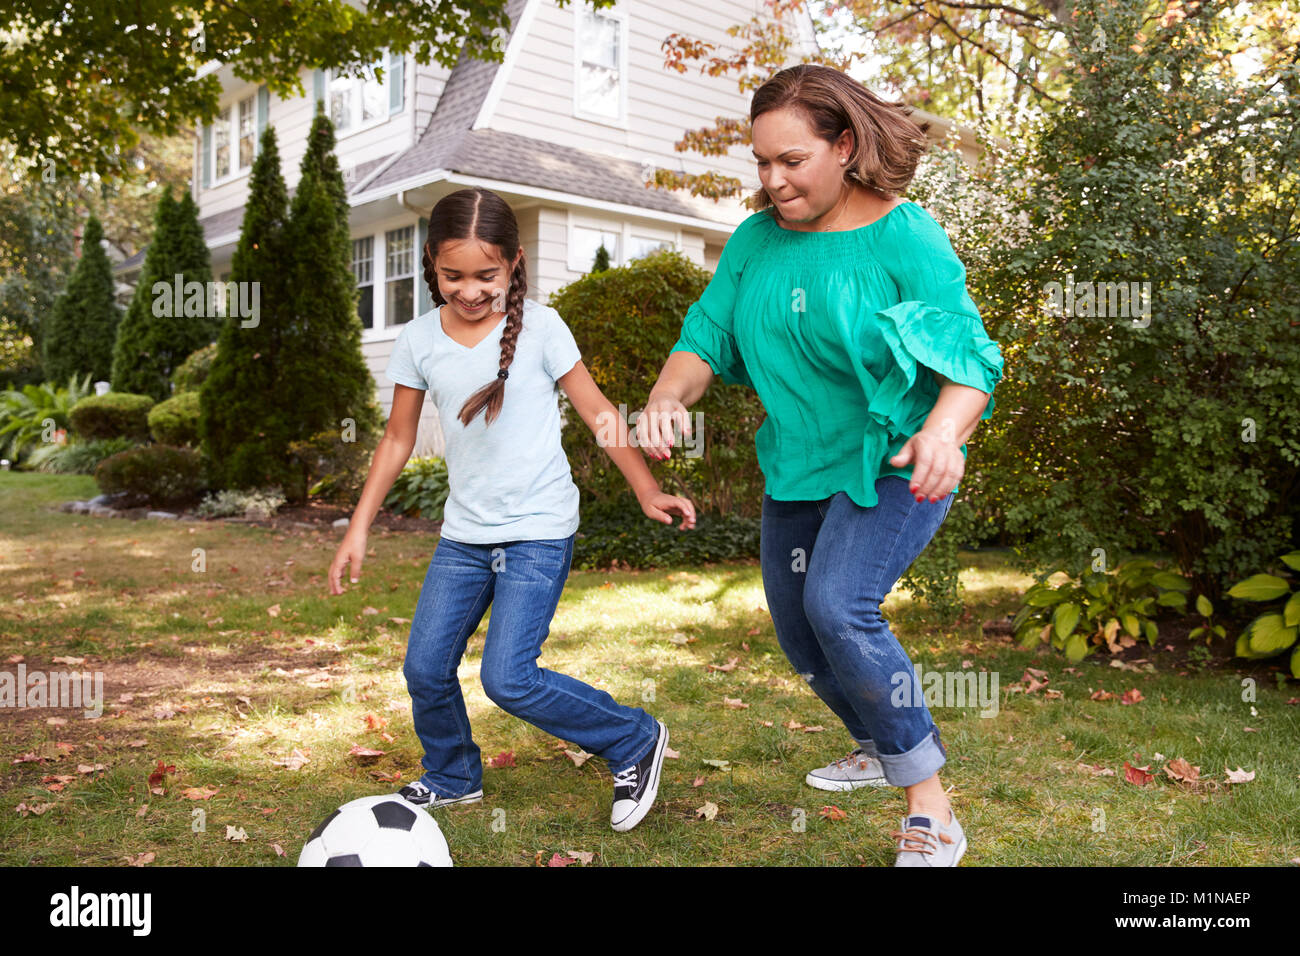 Großmutter Fußball spielen im Garten mit Enkeltochter Stockfoto